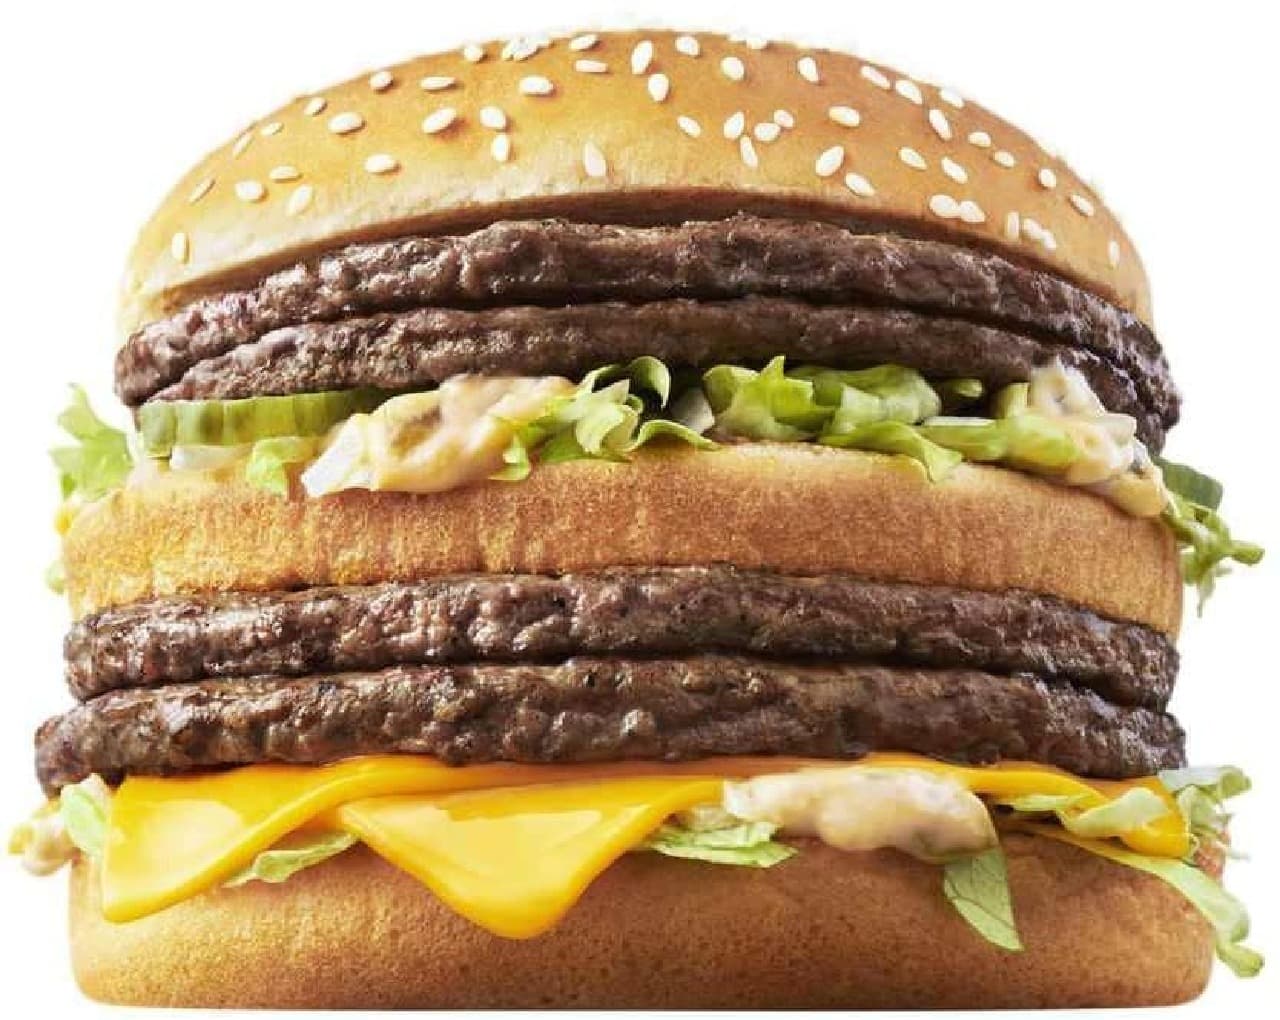 McDonald's "Giga Big Mac"